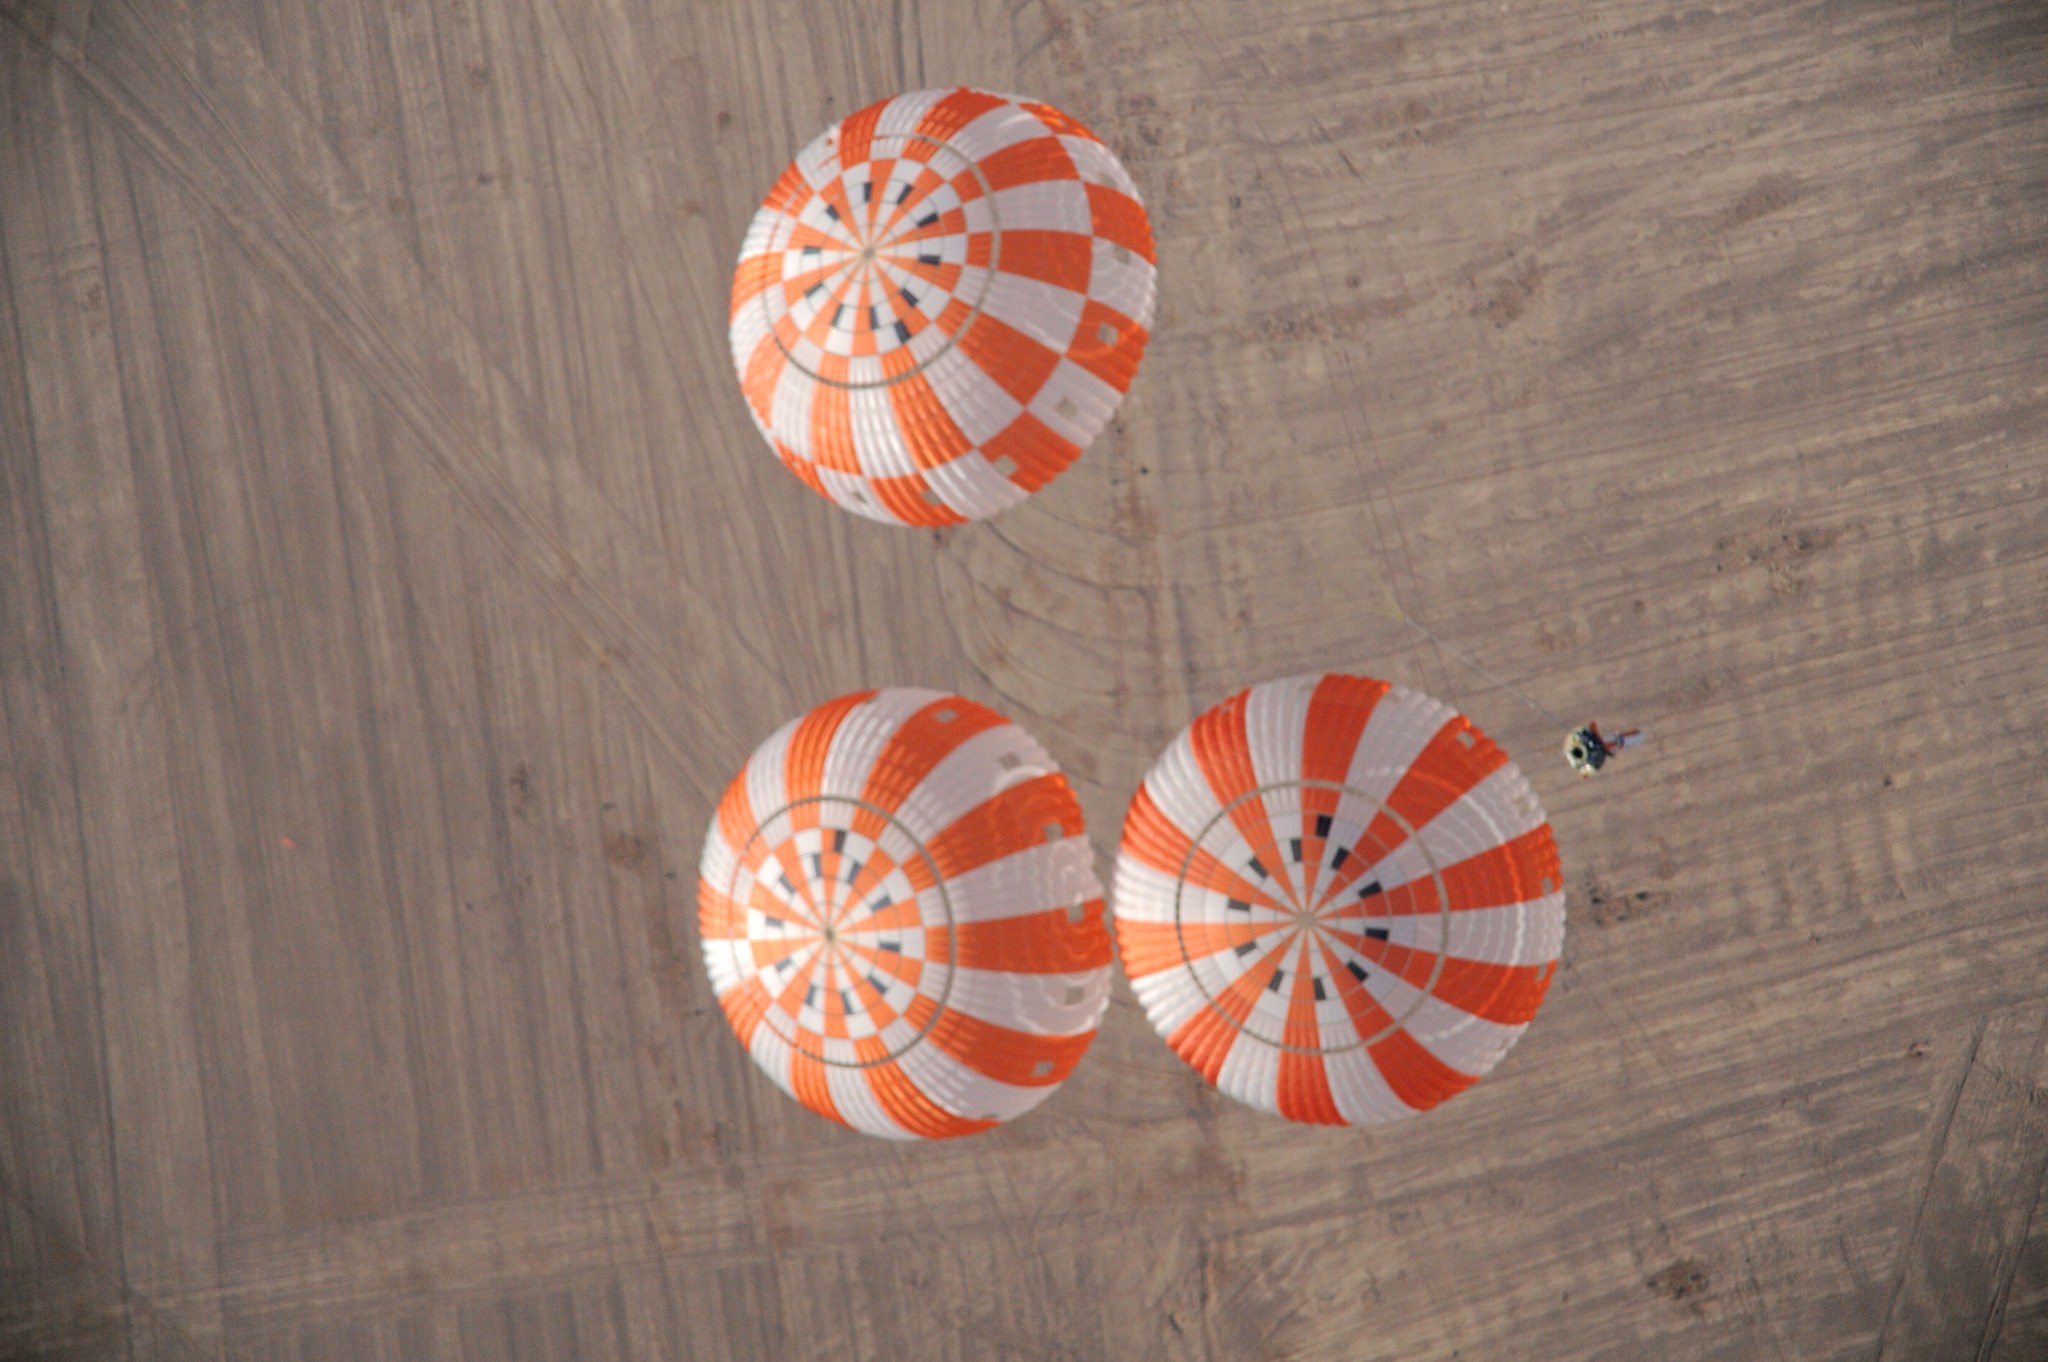 Orion’s Parachutes